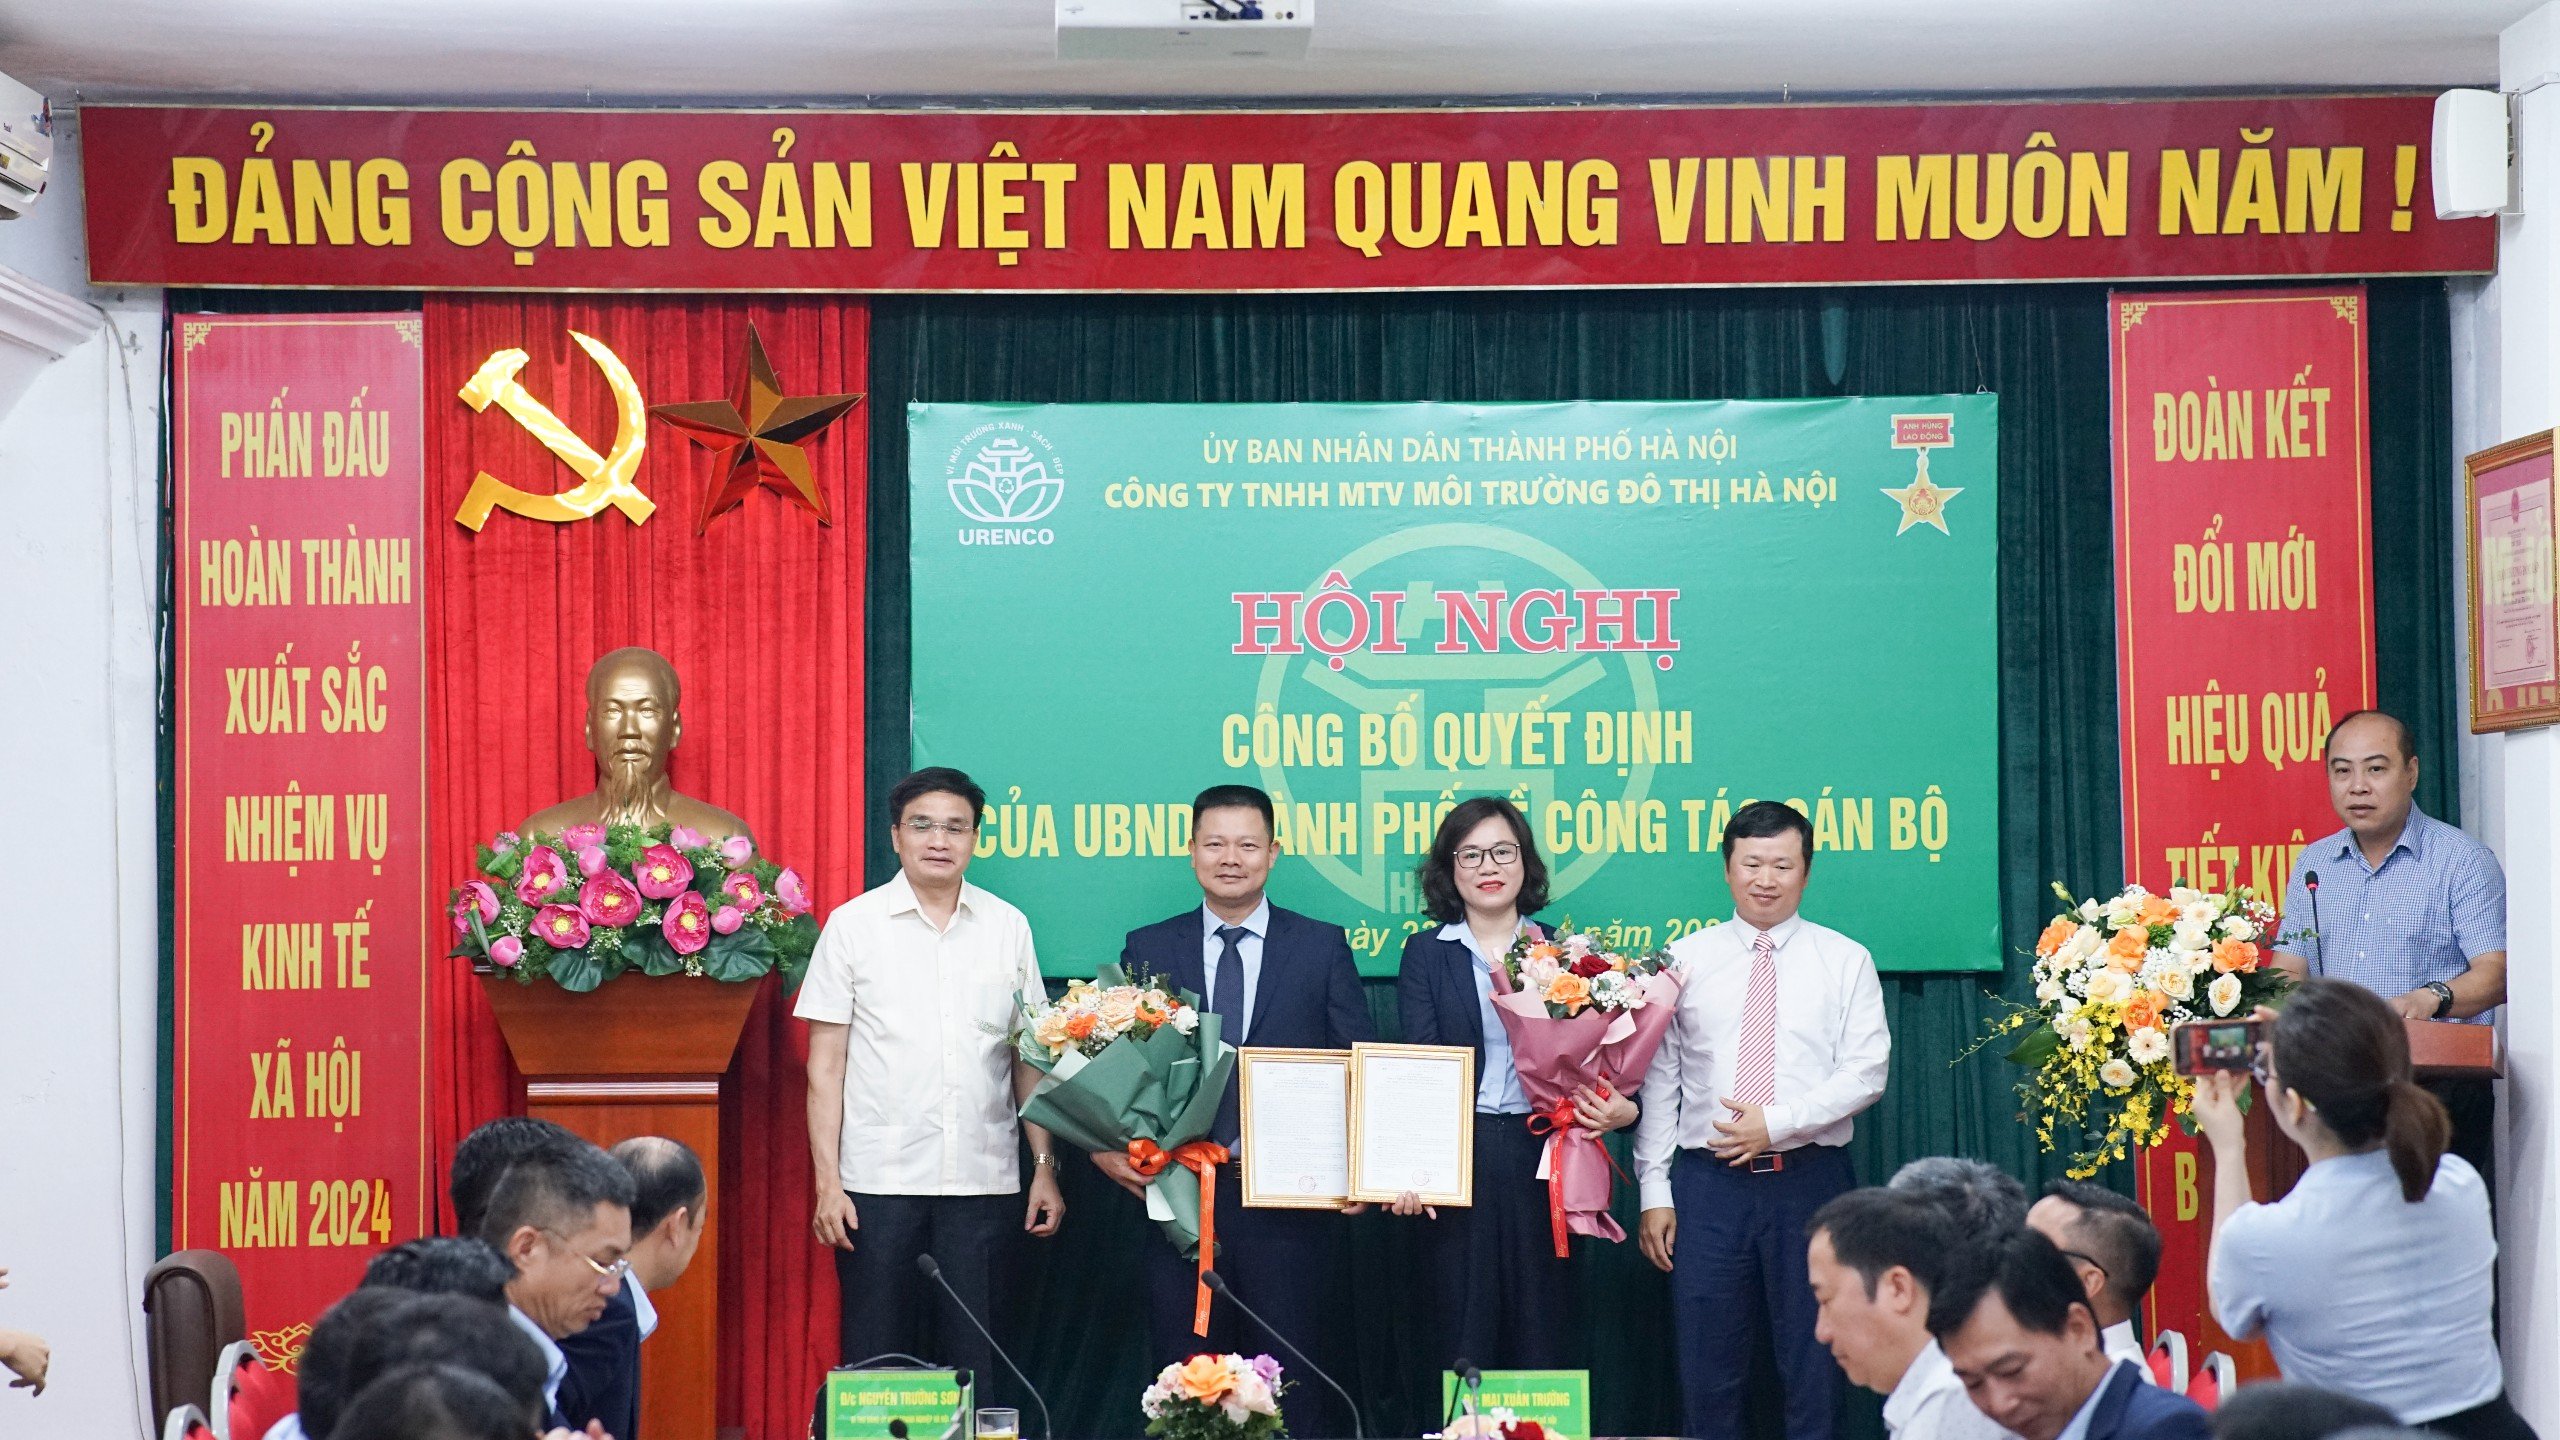 Đồng chí Nguyễn Hải Phong và đồng chí Vũ Hải Vân nhận quyết định của UBND TP bổ nhiệm chức danh Thành viên Hội đồng Thành viên và Phó Tổng Giám đốc Công ty Urenco